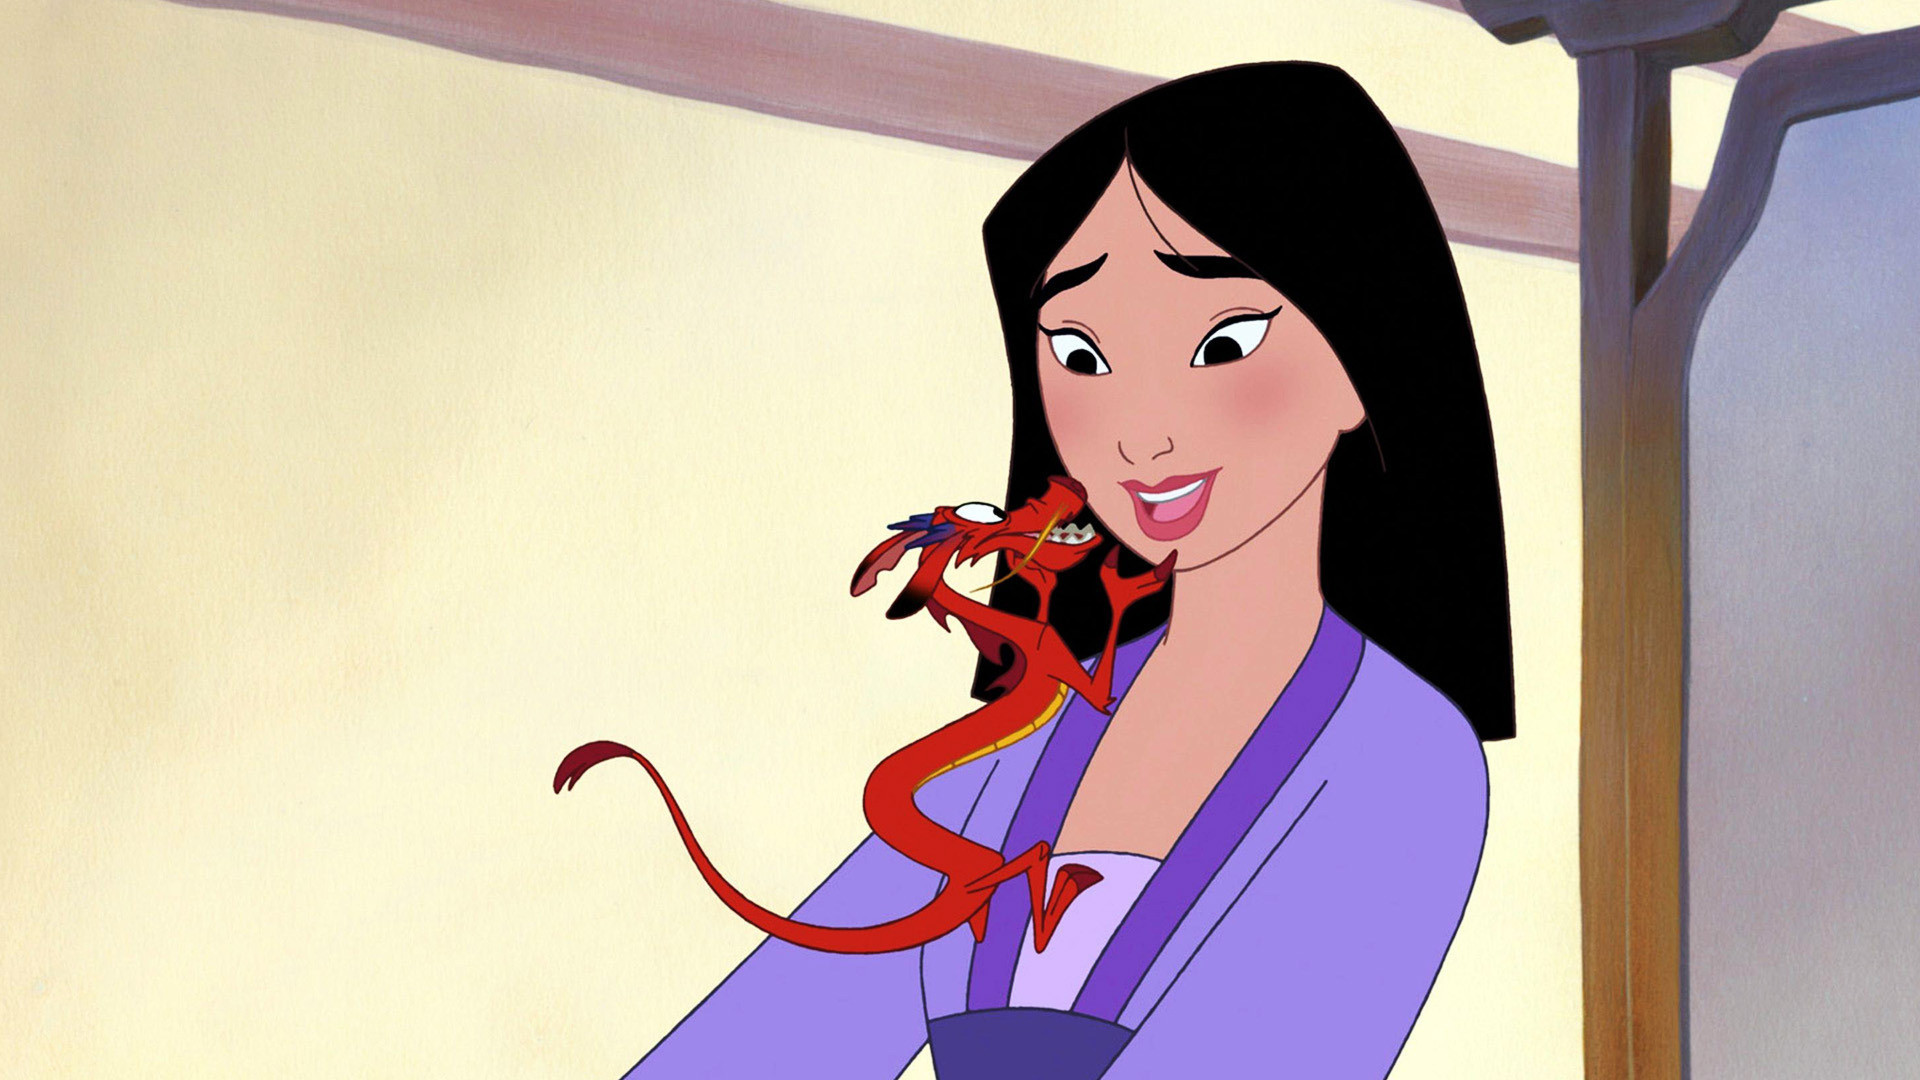 14 nomes de princesas da Disney e os seus significados